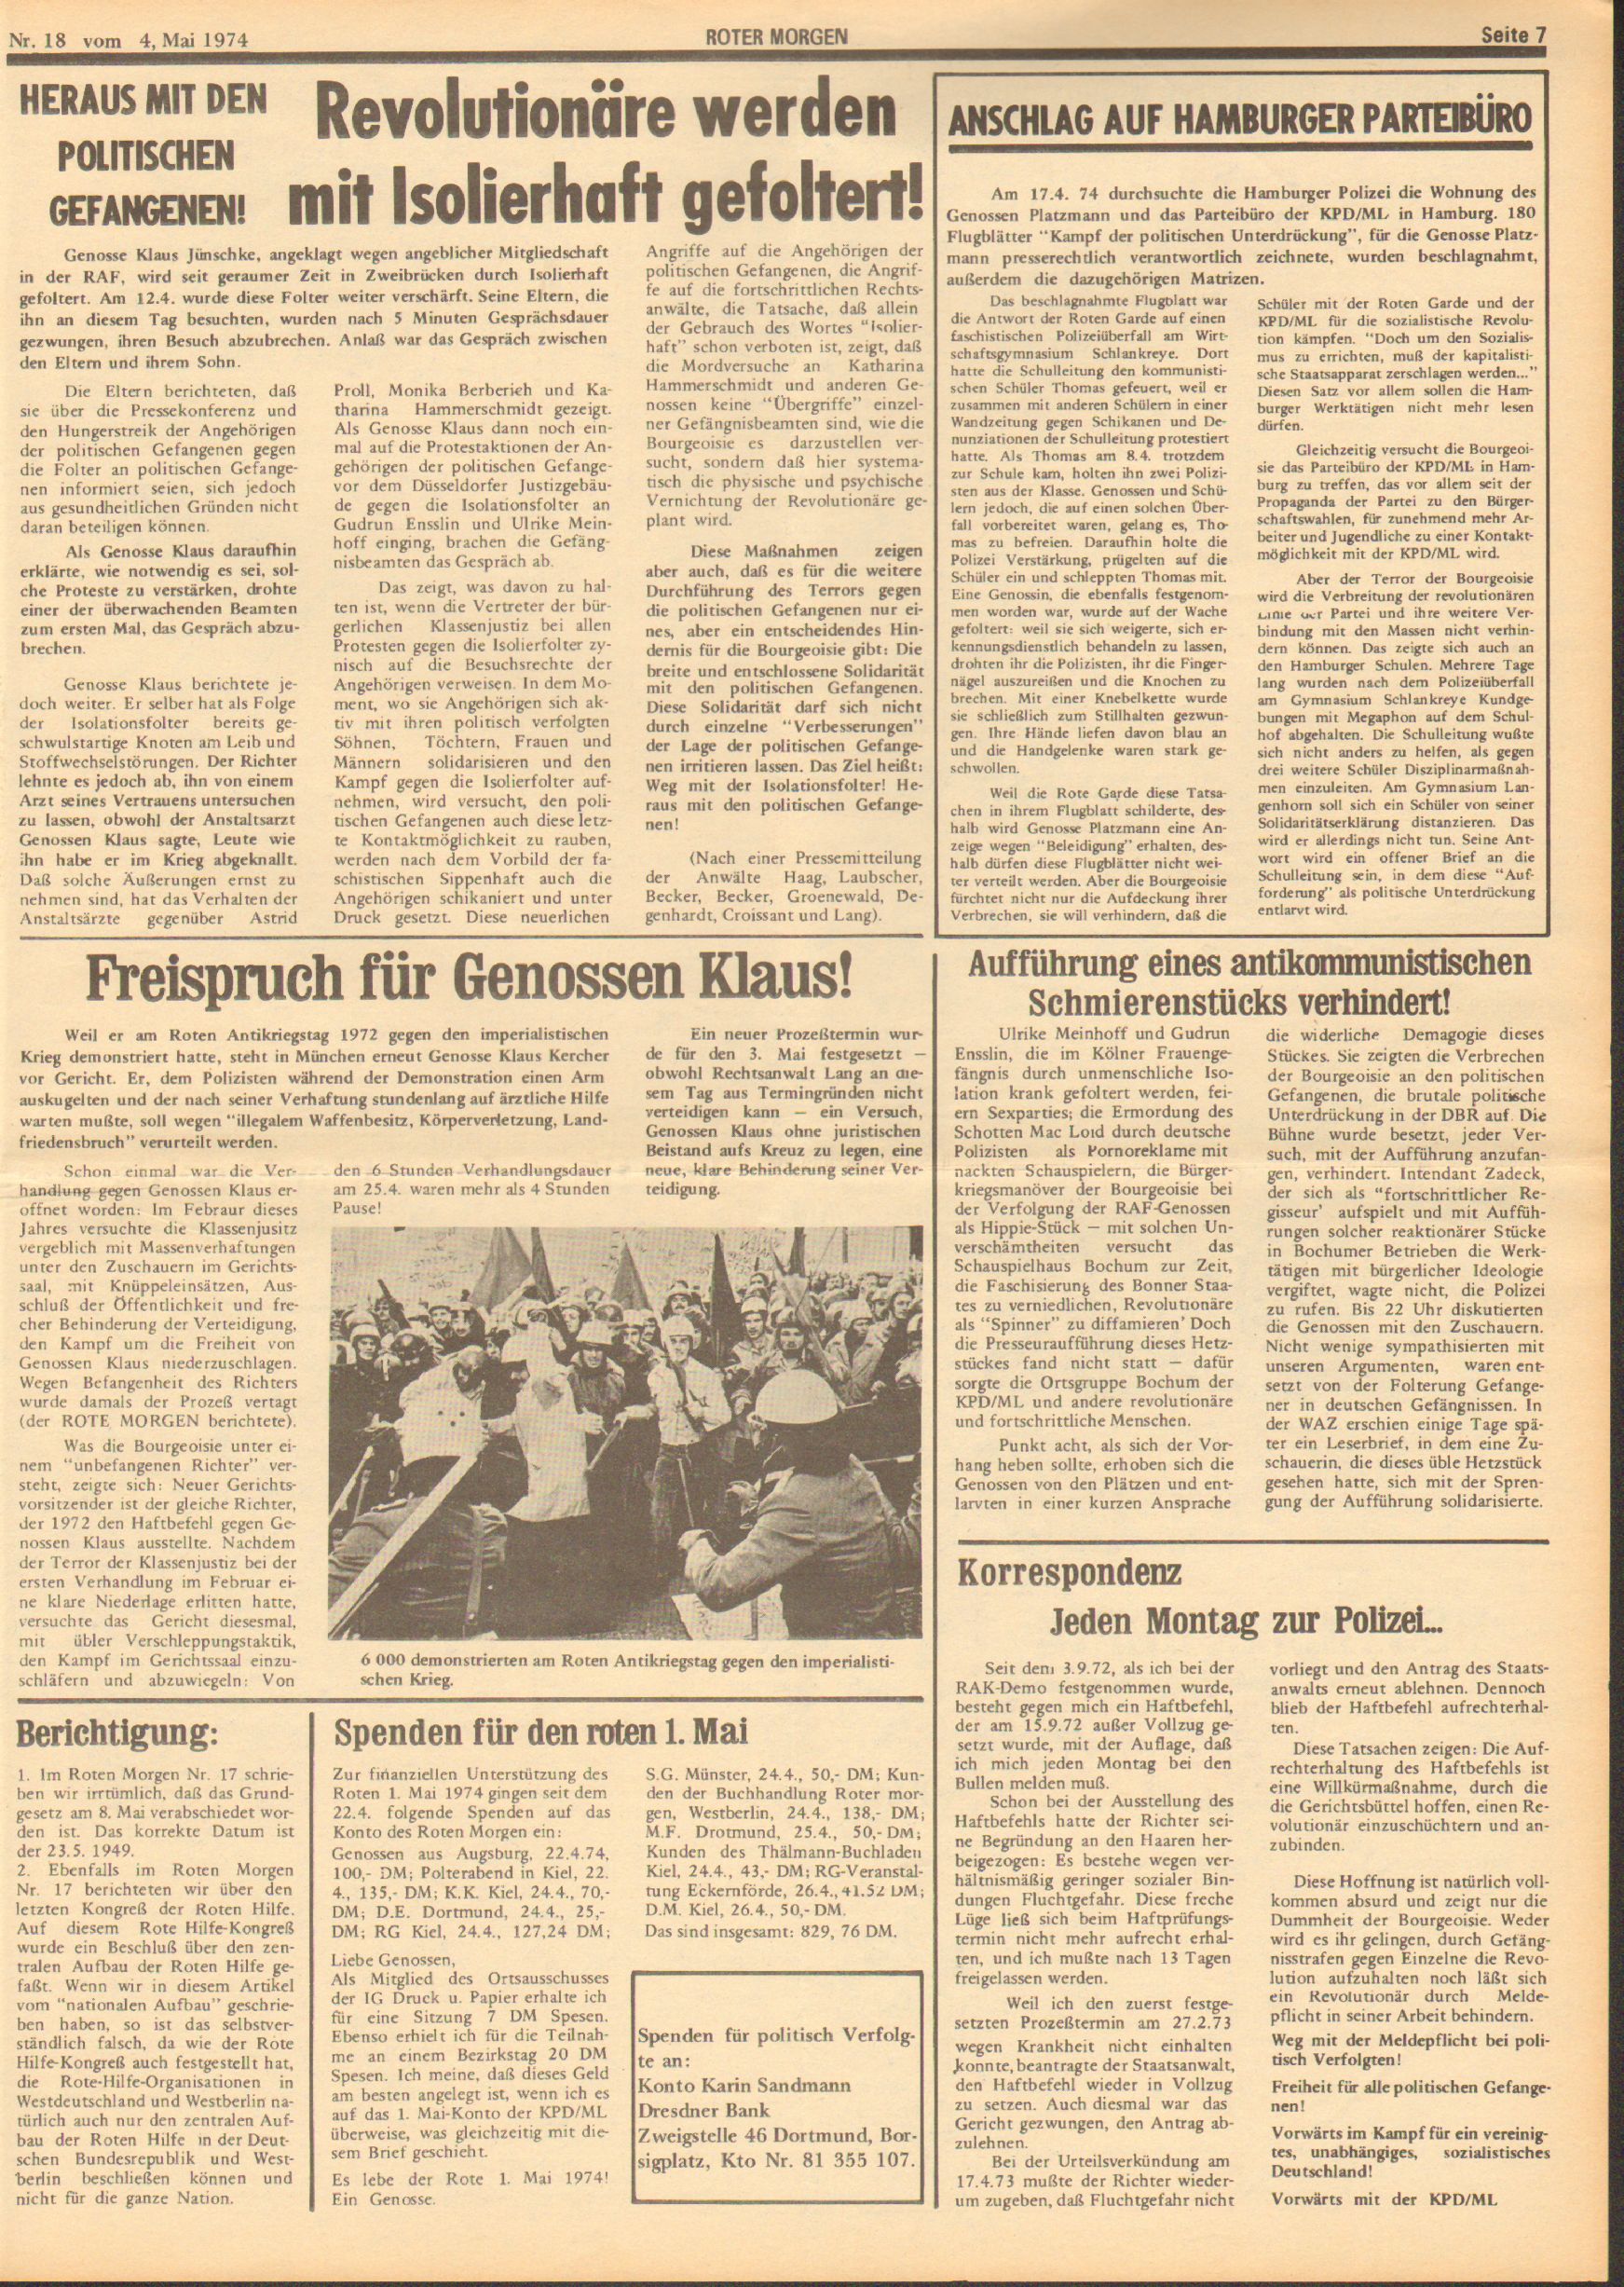 Roter Morgen, 8. Jg., 4. Mai 1974, Nr. 18, Seite 7